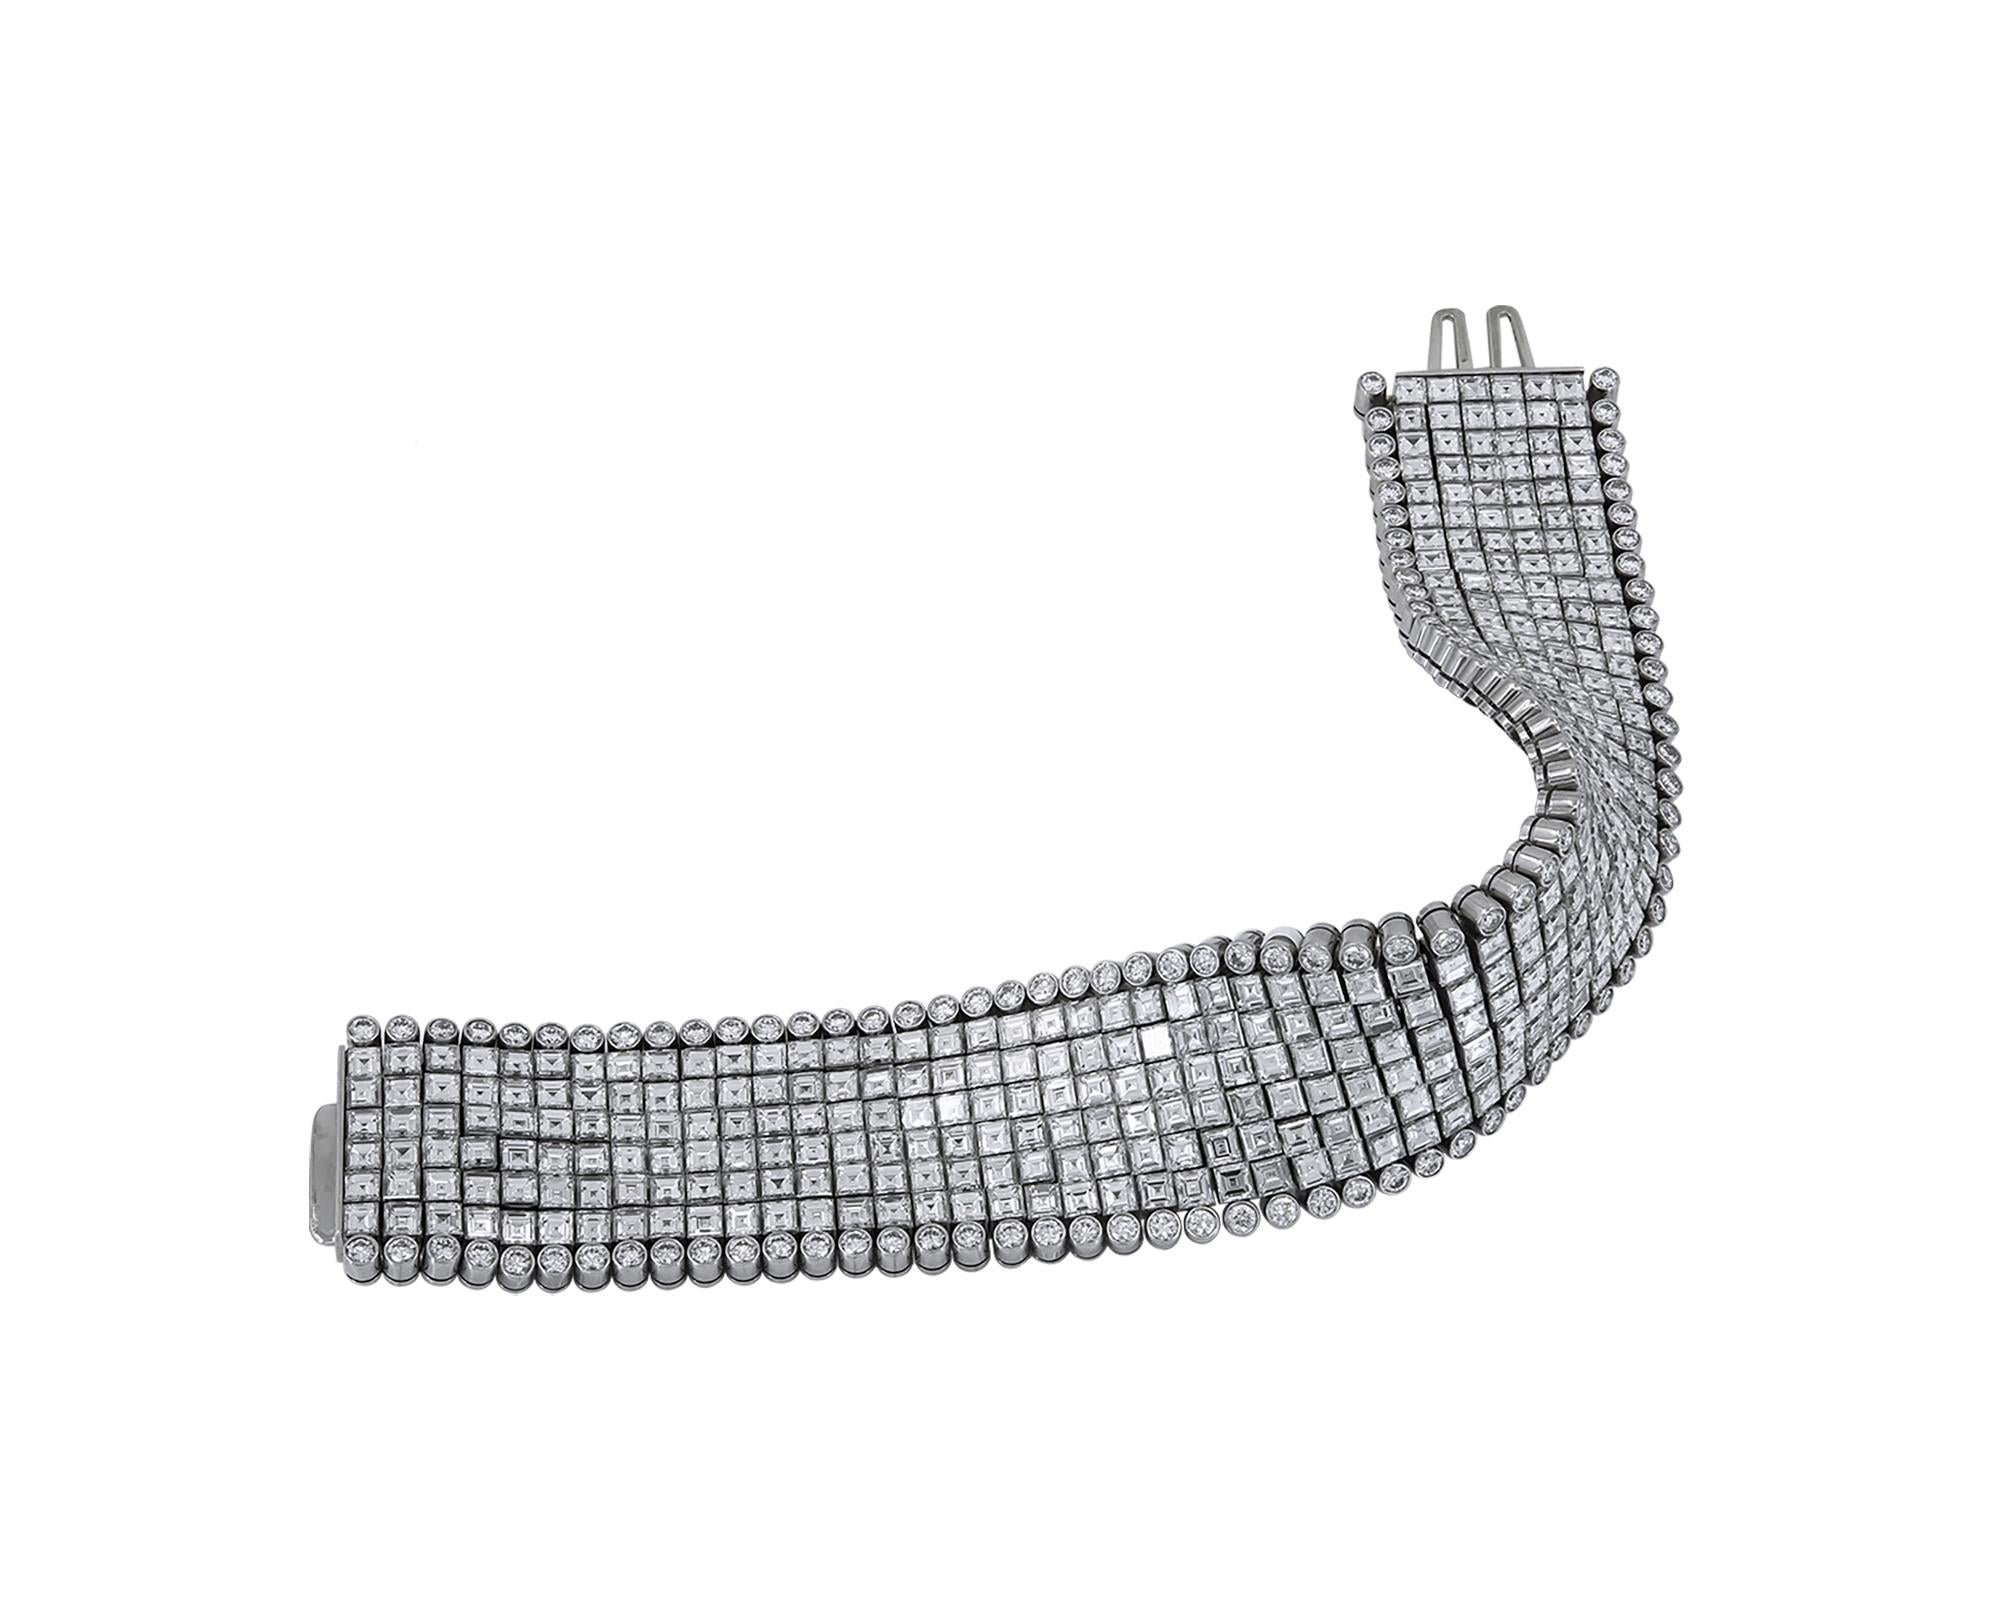 Ein atemberaubendes Armband, kreiert von Oscar Heyman.
Er ist mit Diamanten in gemischter Form besetzt und in Platin gefasst. 
265 Diamanten im Ascherschliff mit einem Gesamtgewicht von 45,25 Karat.
106 runde Diamanten mit einem Gesamtgewicht von